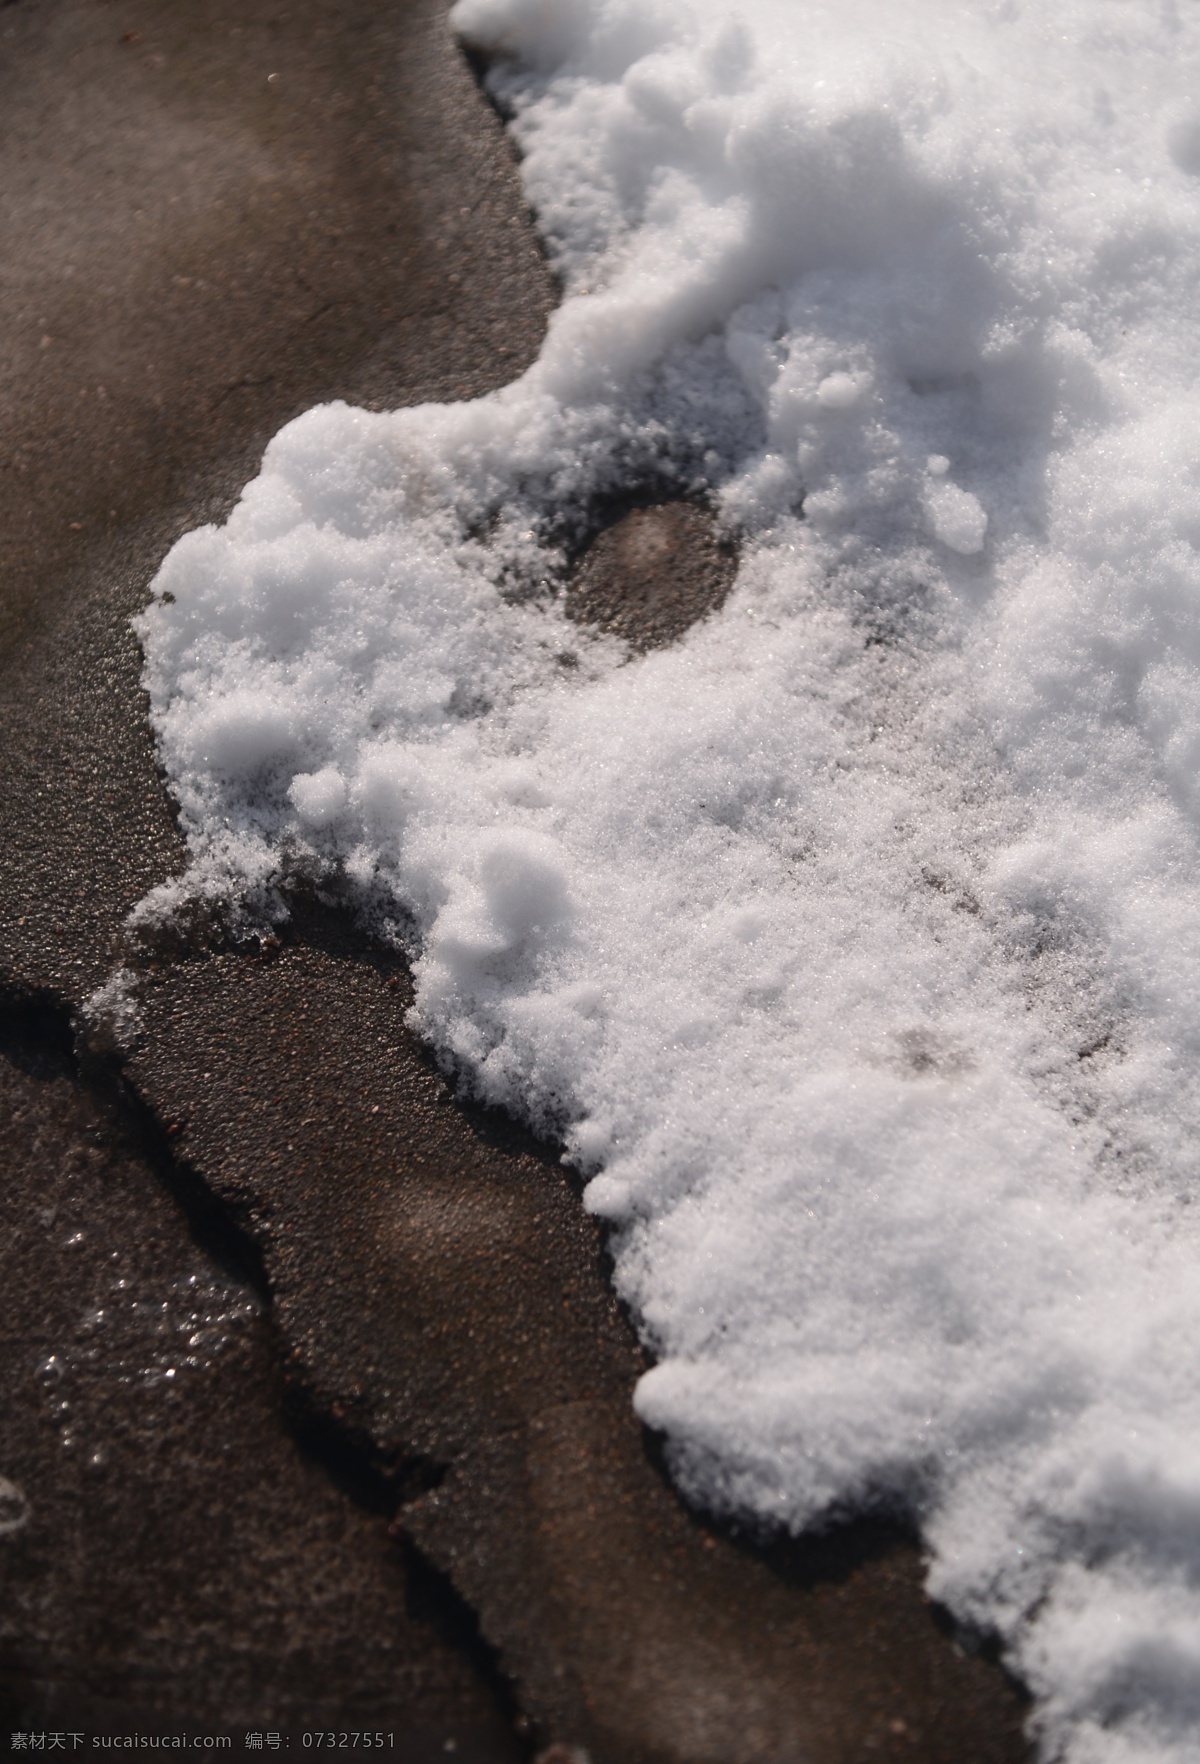 冬天 拍摄 地面 结冰 雪 冬季 冰 阳光 冰粒 白色 影子 颗粒